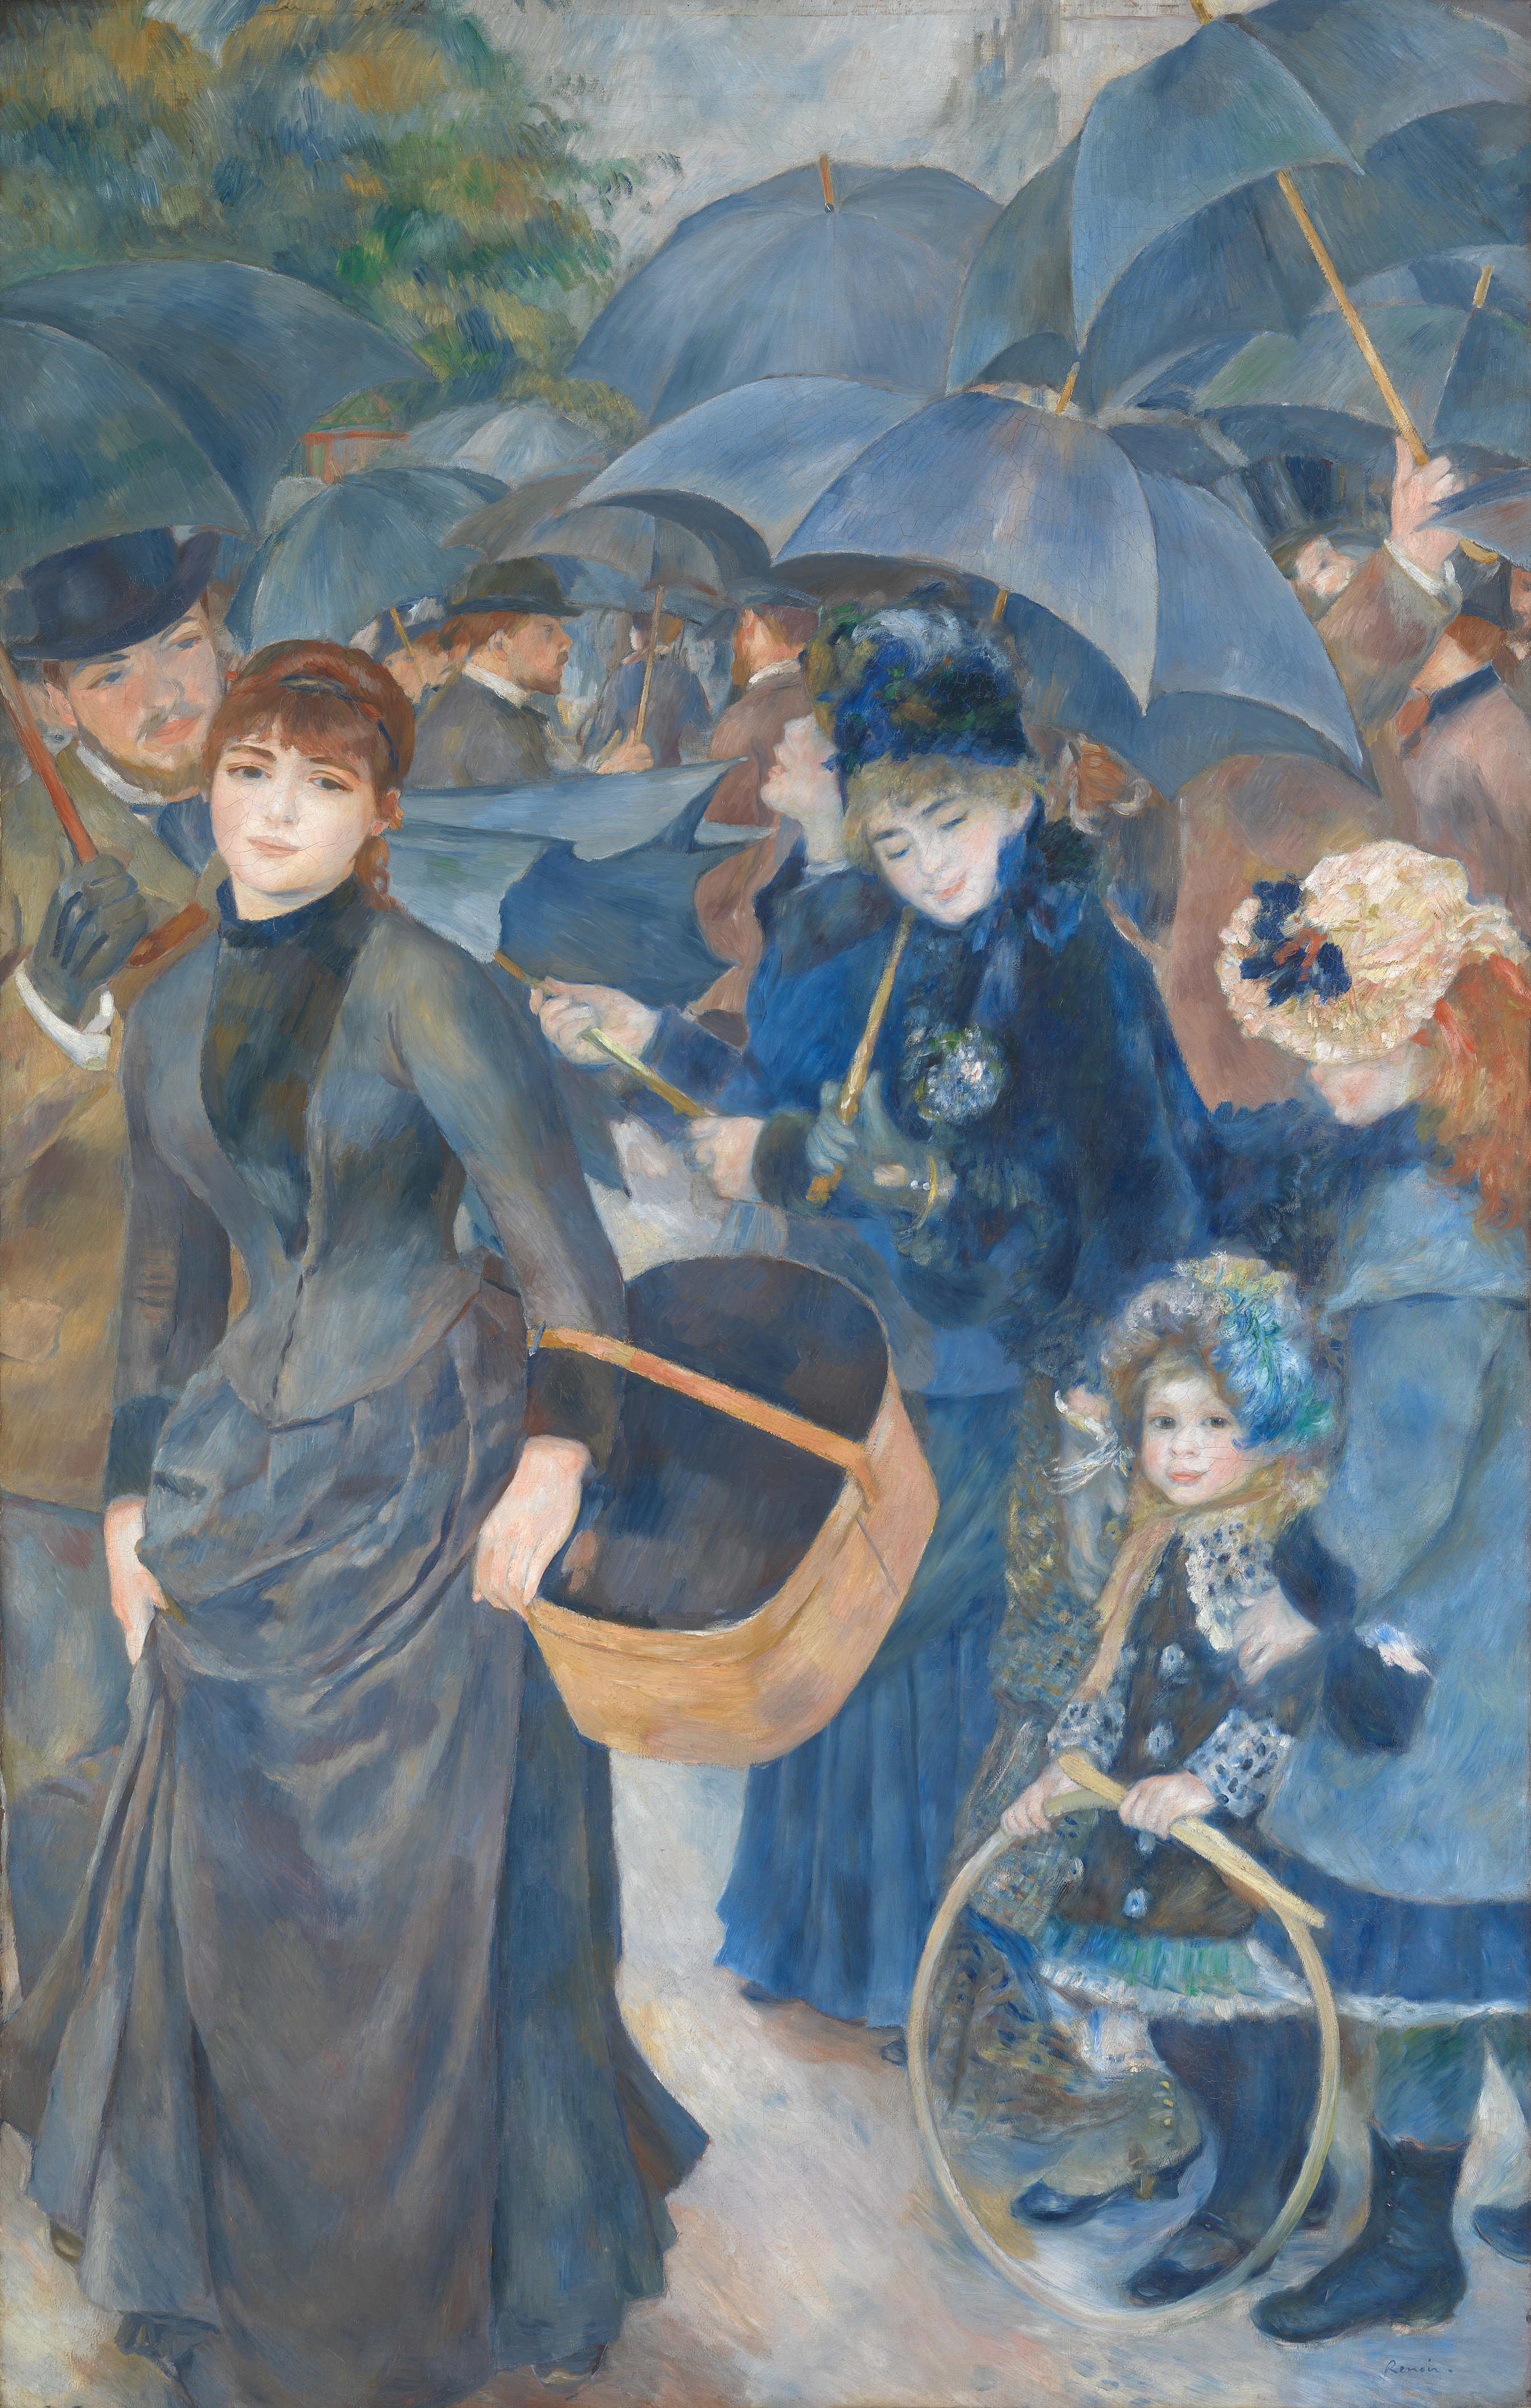 Os Chapéus-de-chuva by Pierre-Auguste Renoir - 1883 - 180 × 115 cm 